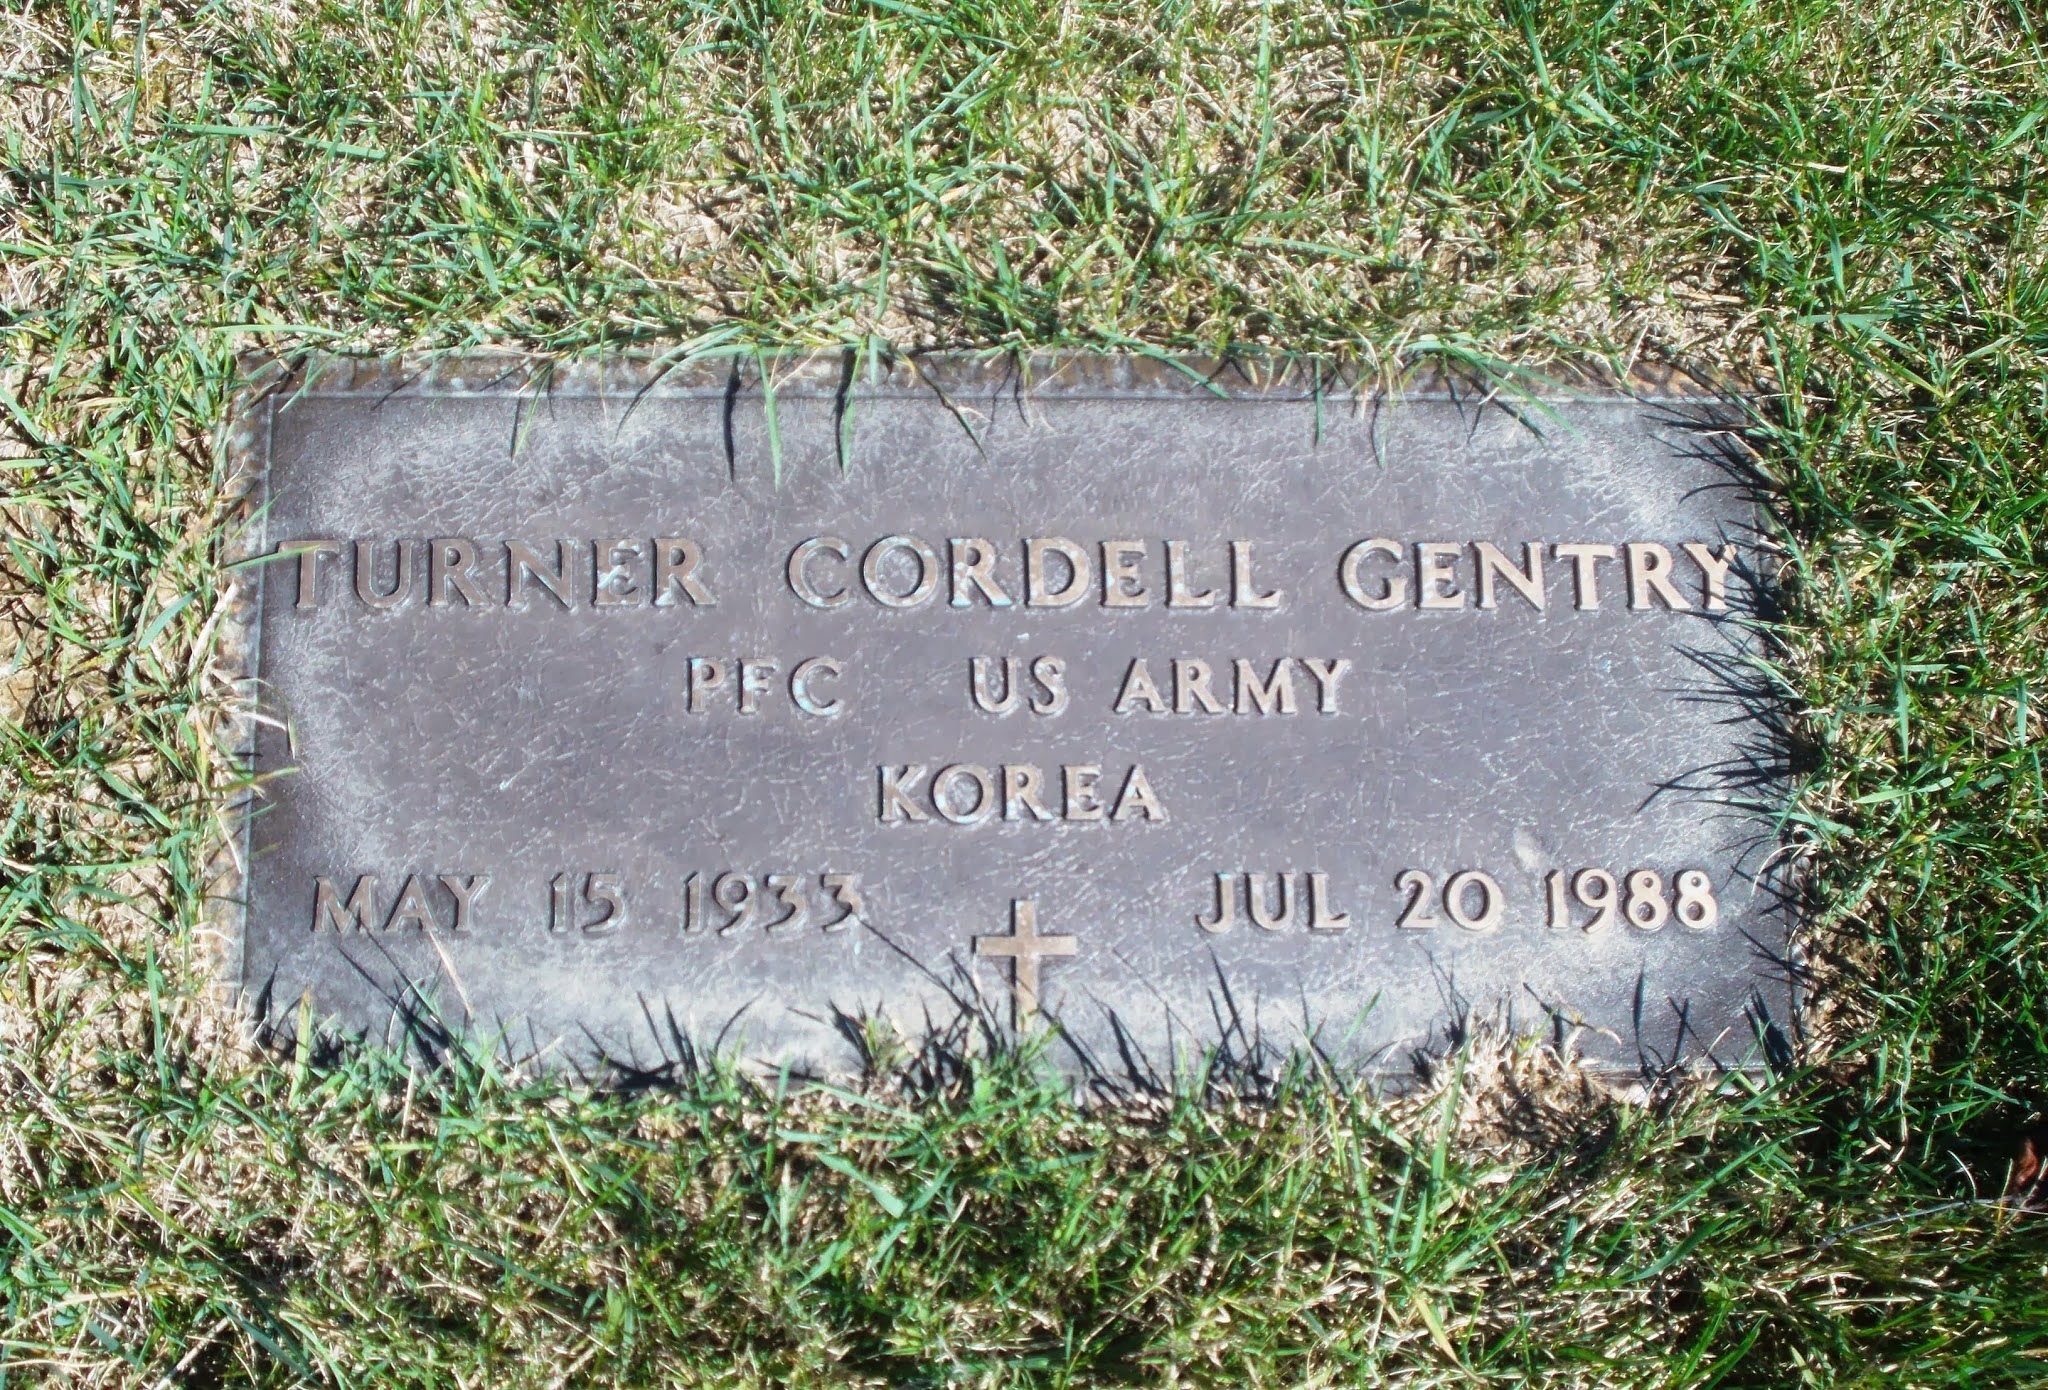 Turner Cordell Gentry